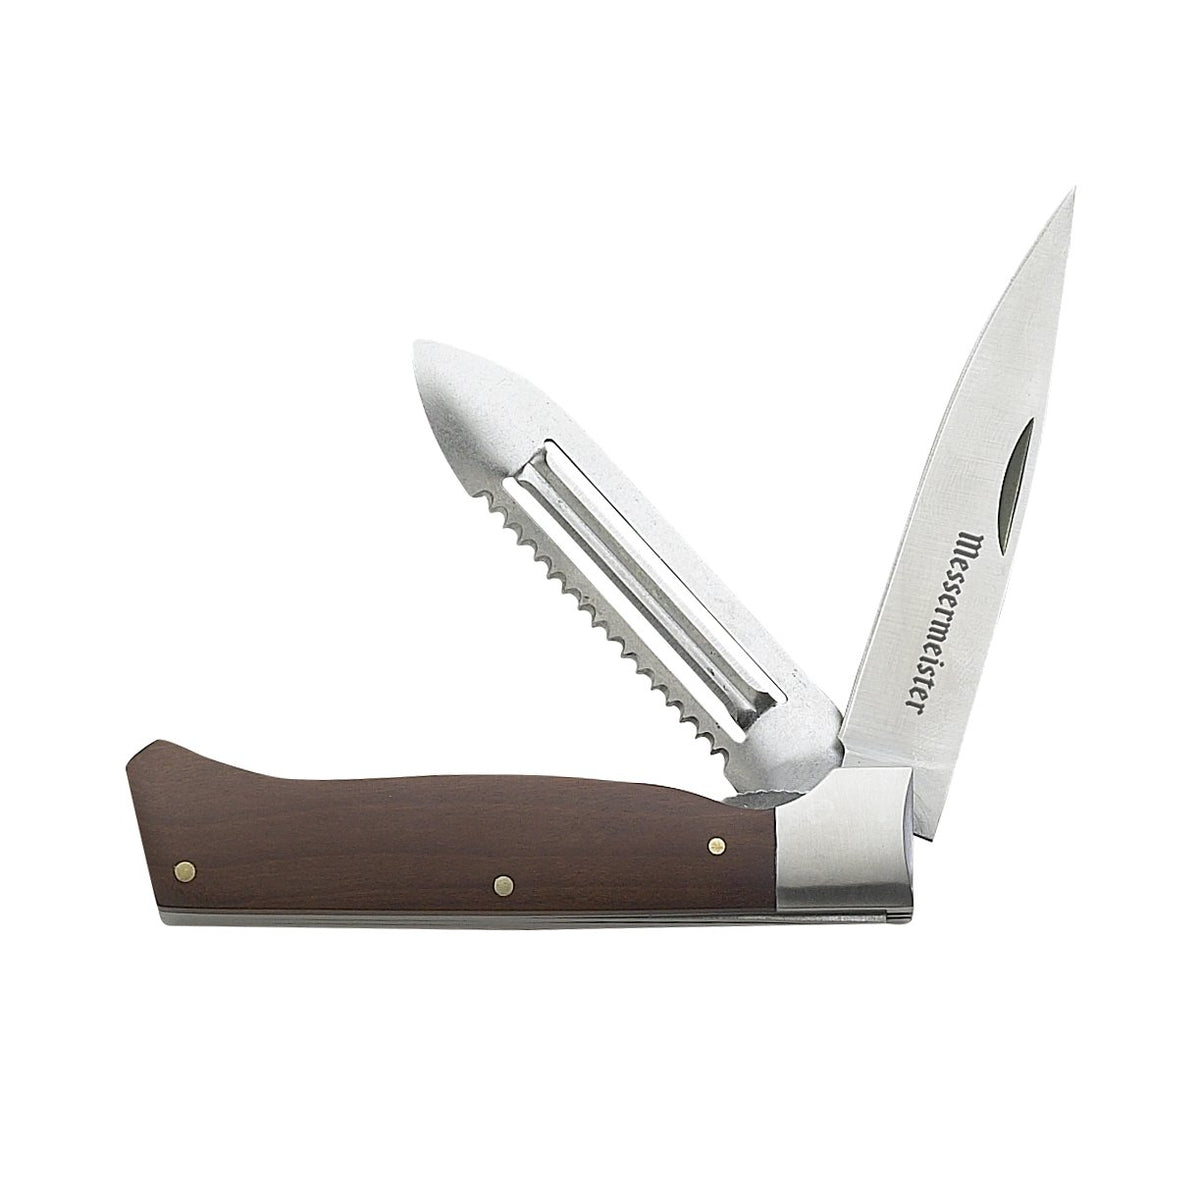 Messermeister 12 Slicer Knife Edge Guard - Whisk